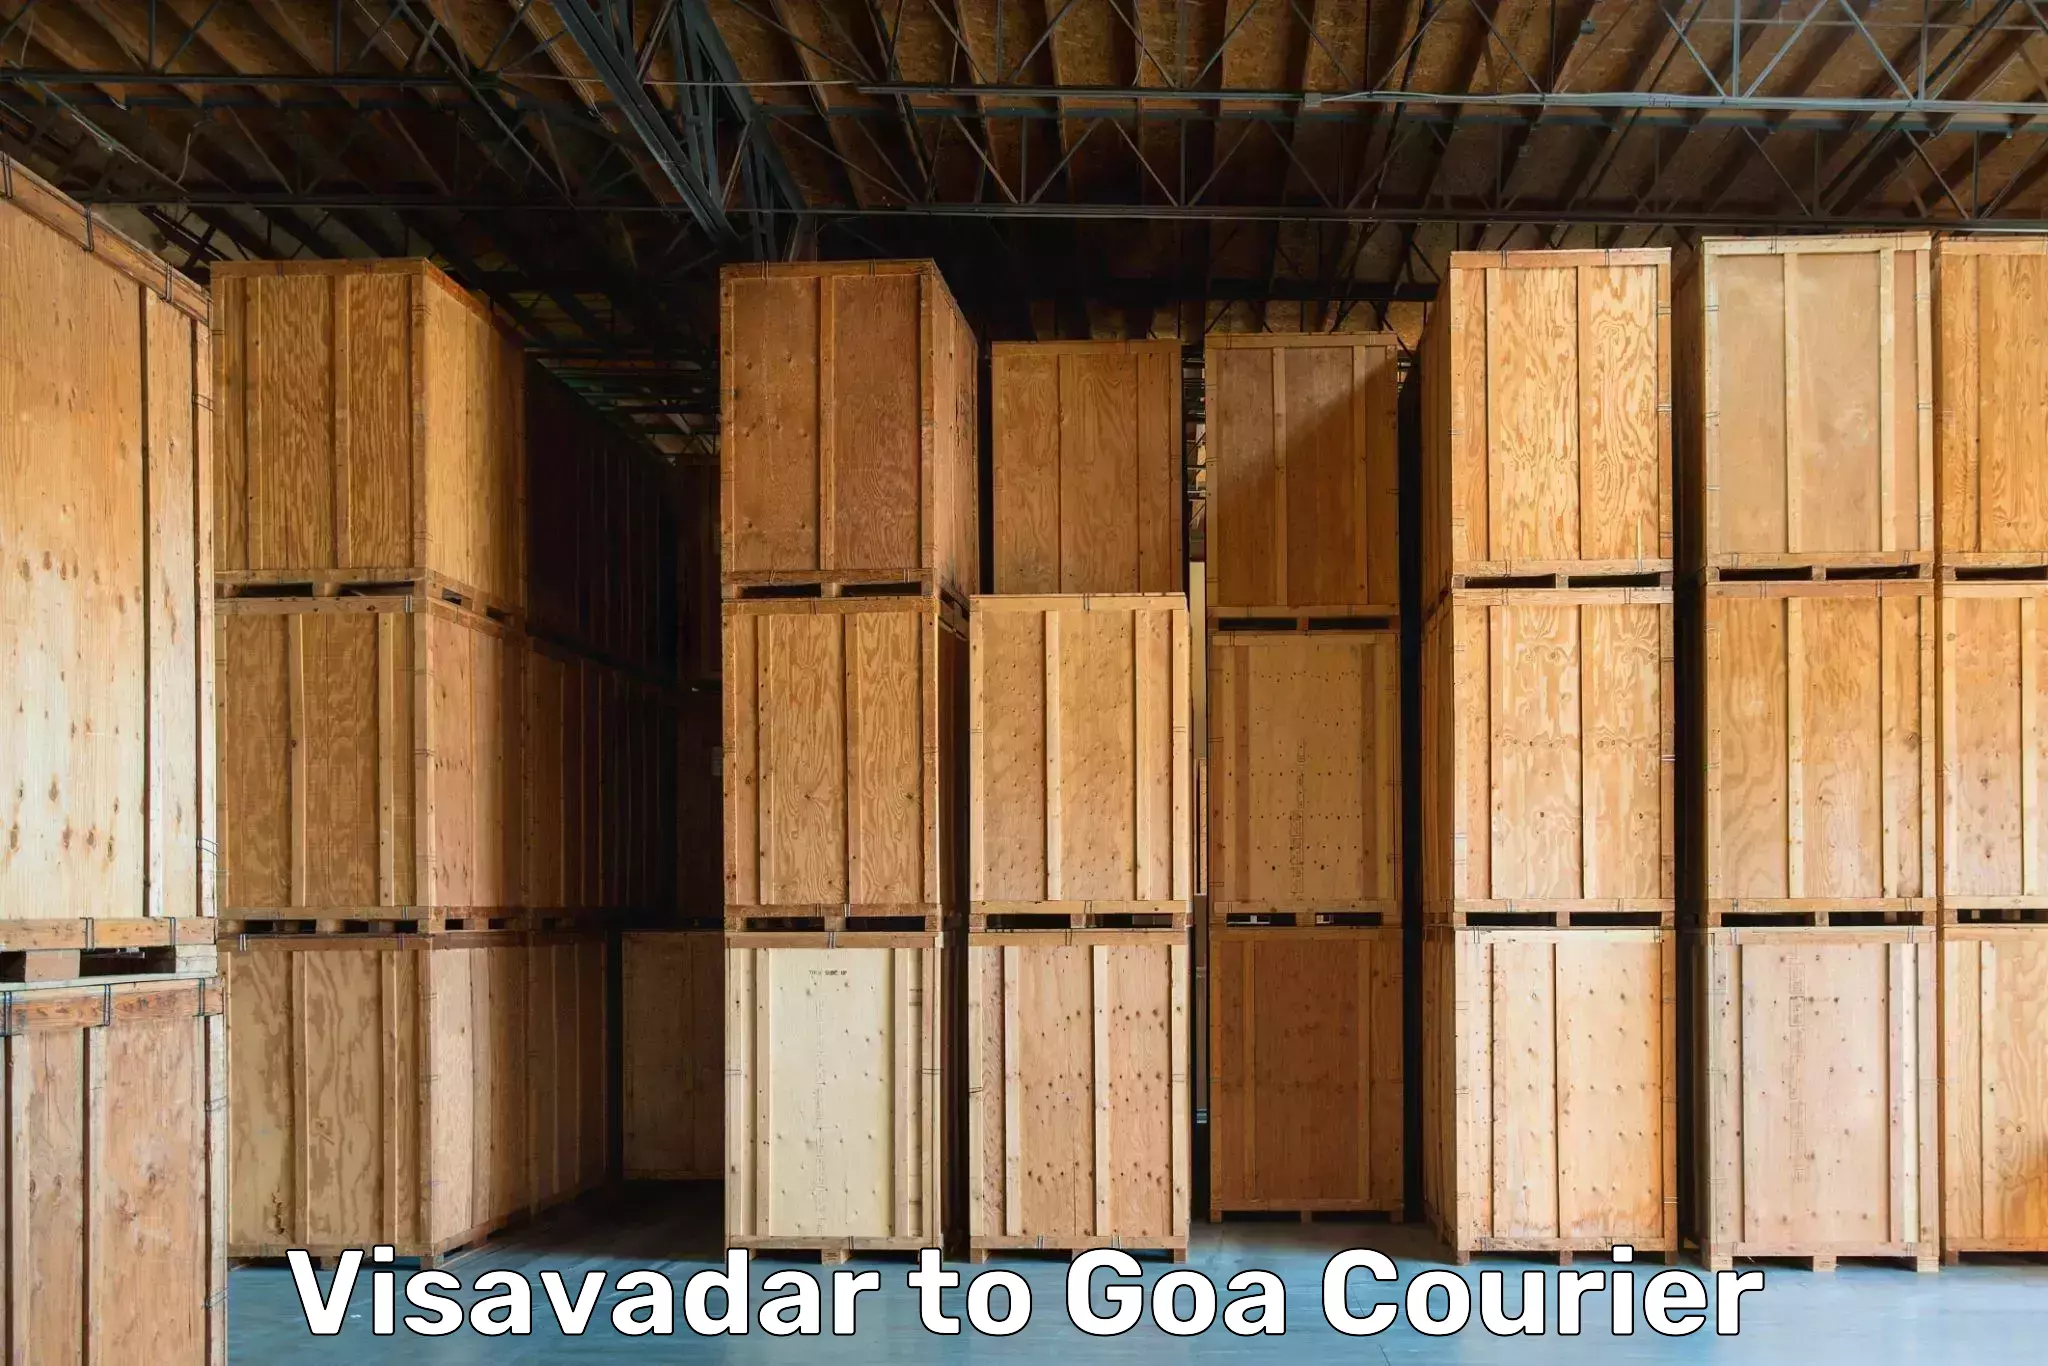 Quality relocation services Visavadar to Goa